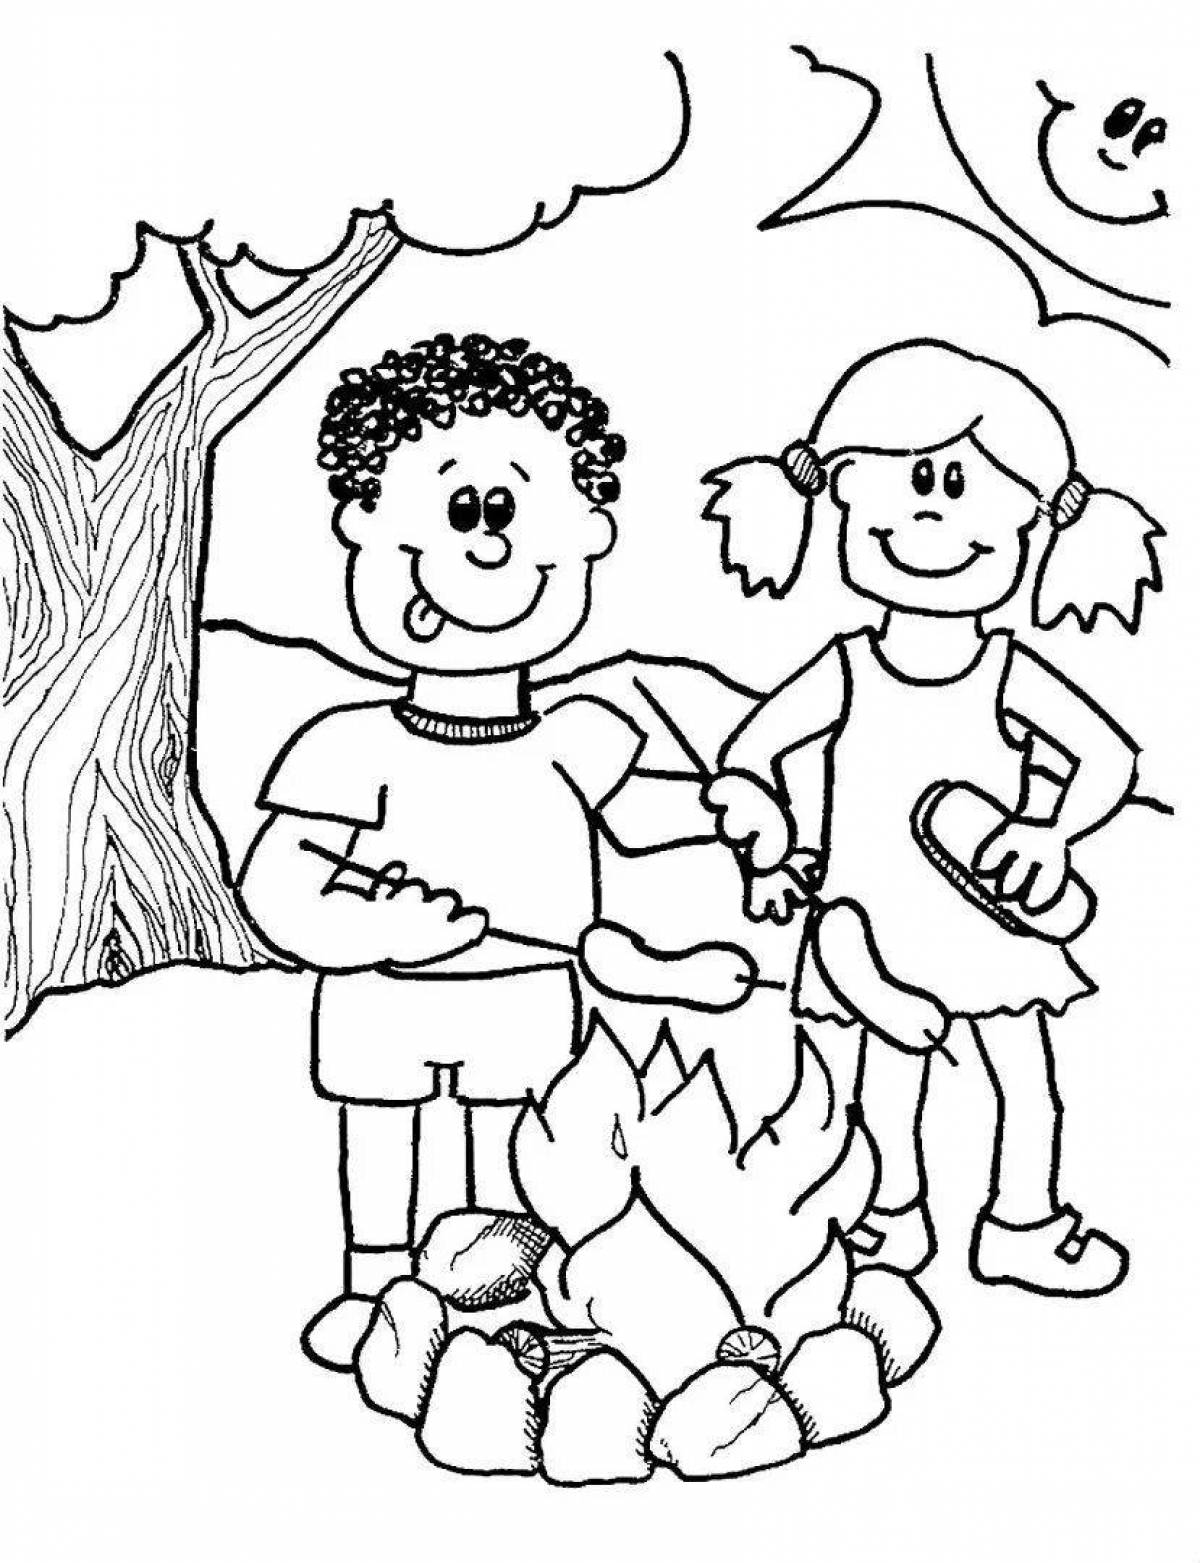 Буйная раскраска для детей правила поведения в лесу